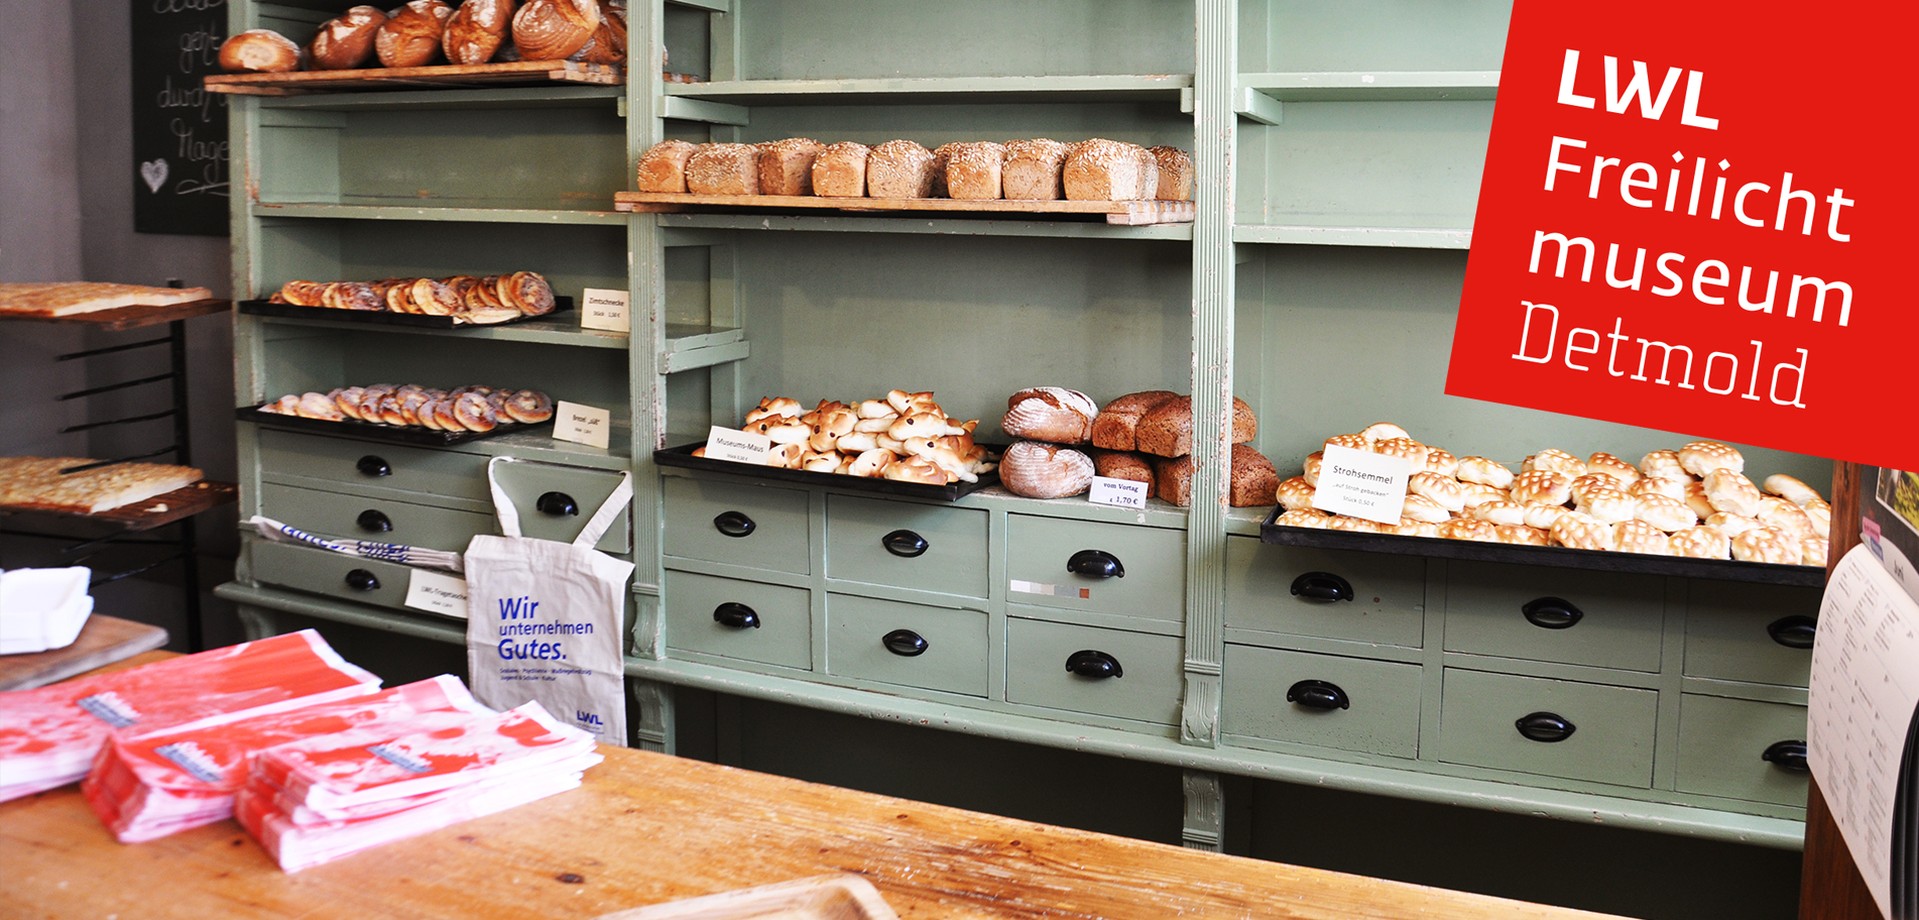 Den Verkaufsraum der Bäckerei. In den Regalen liegen Backwaren wie Brote und Kuchen.